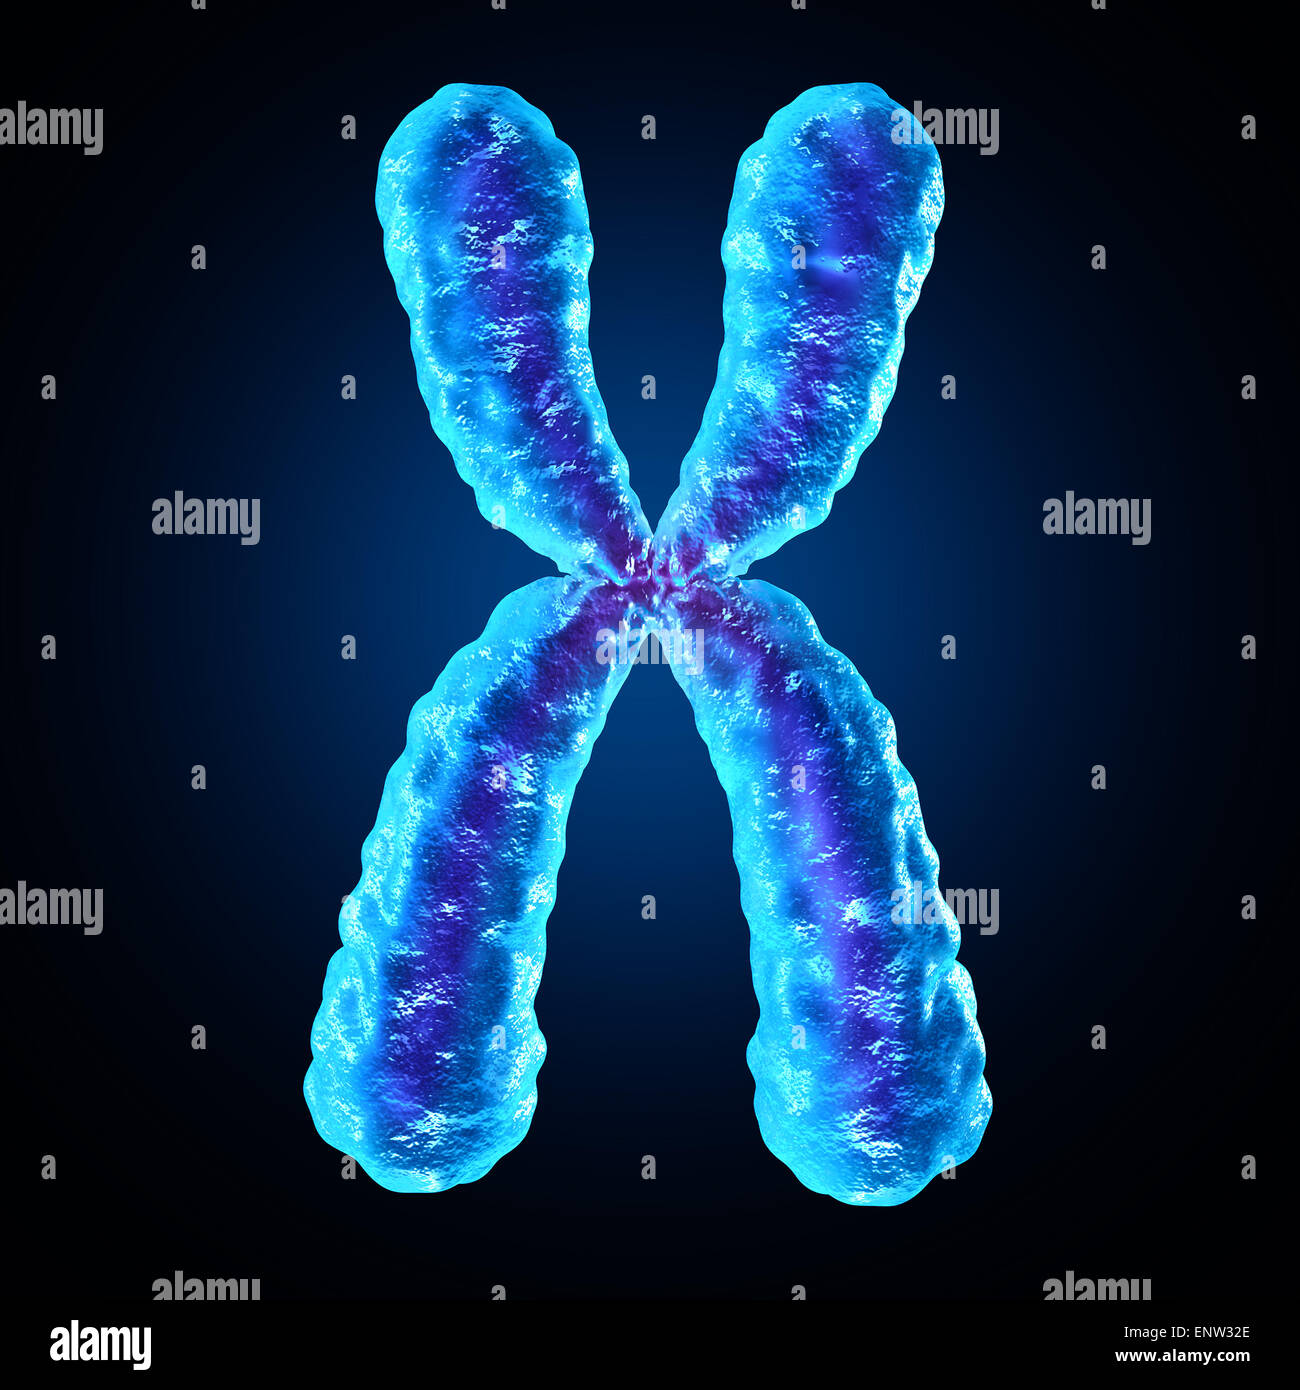 Cromosoma come una biologia umana x struttura dna contenente informazioni genetiche di un simbolo di medici per la terapia genica o di microbiologia della ricerca genetica. Foto Stock